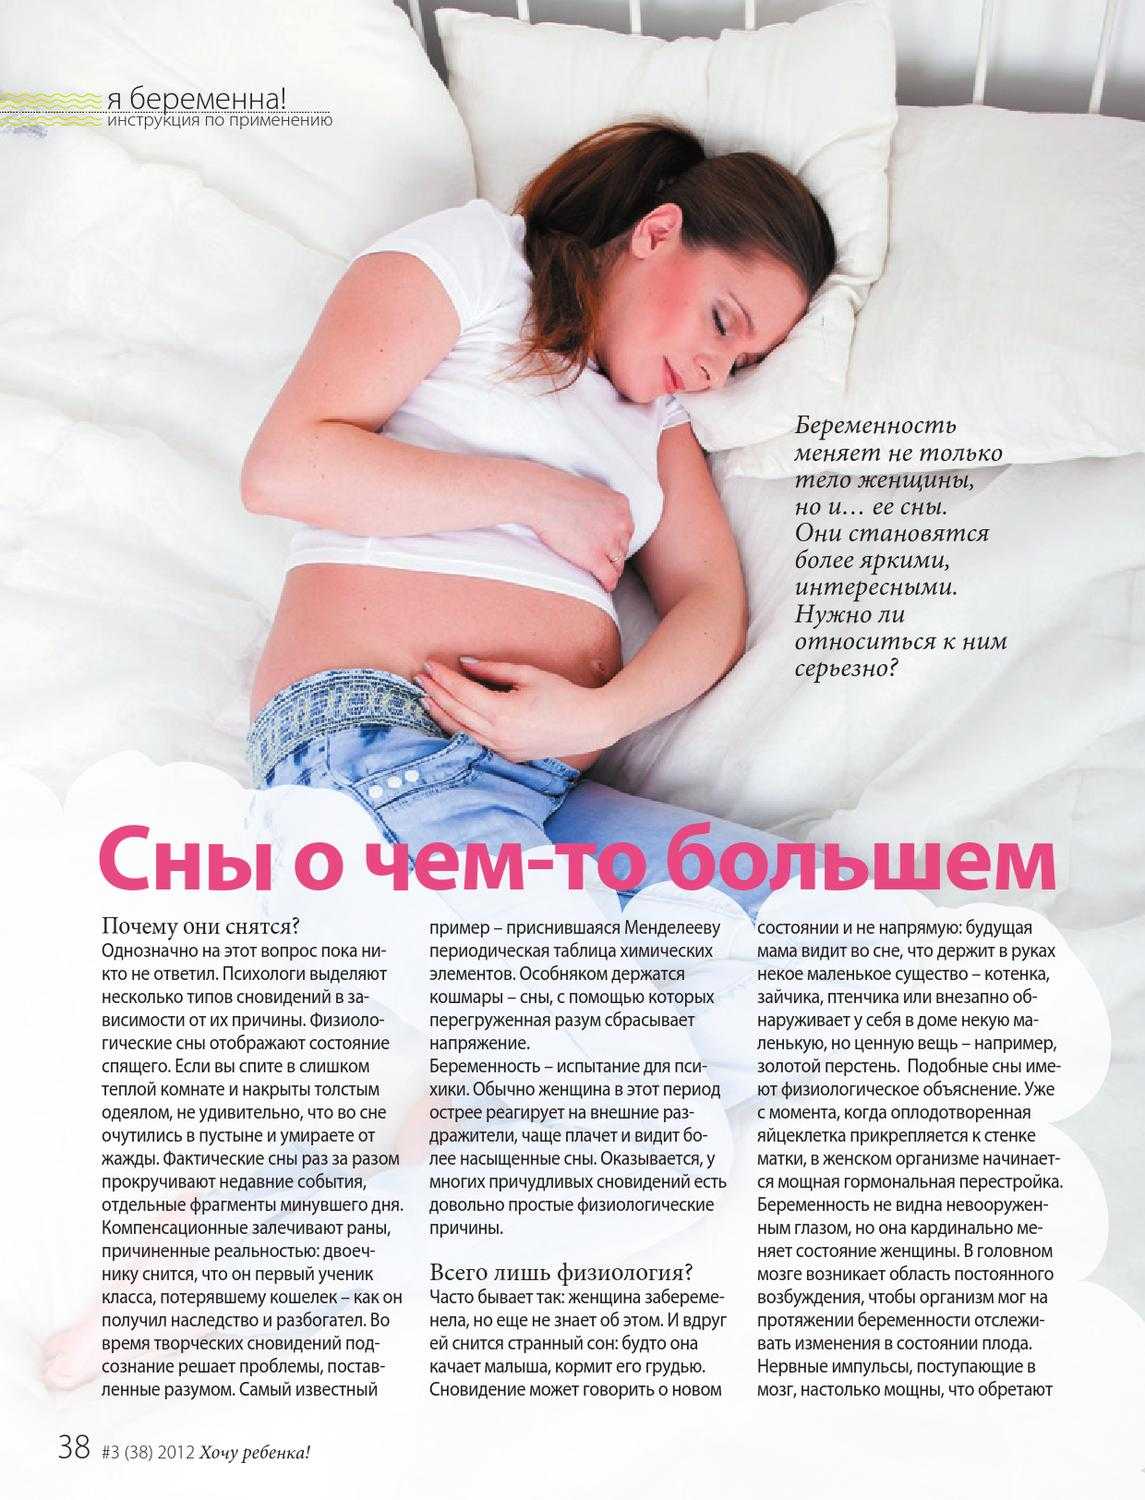 Какие сны предвещают беременность: сновидения, предрекающие прибавление в семье